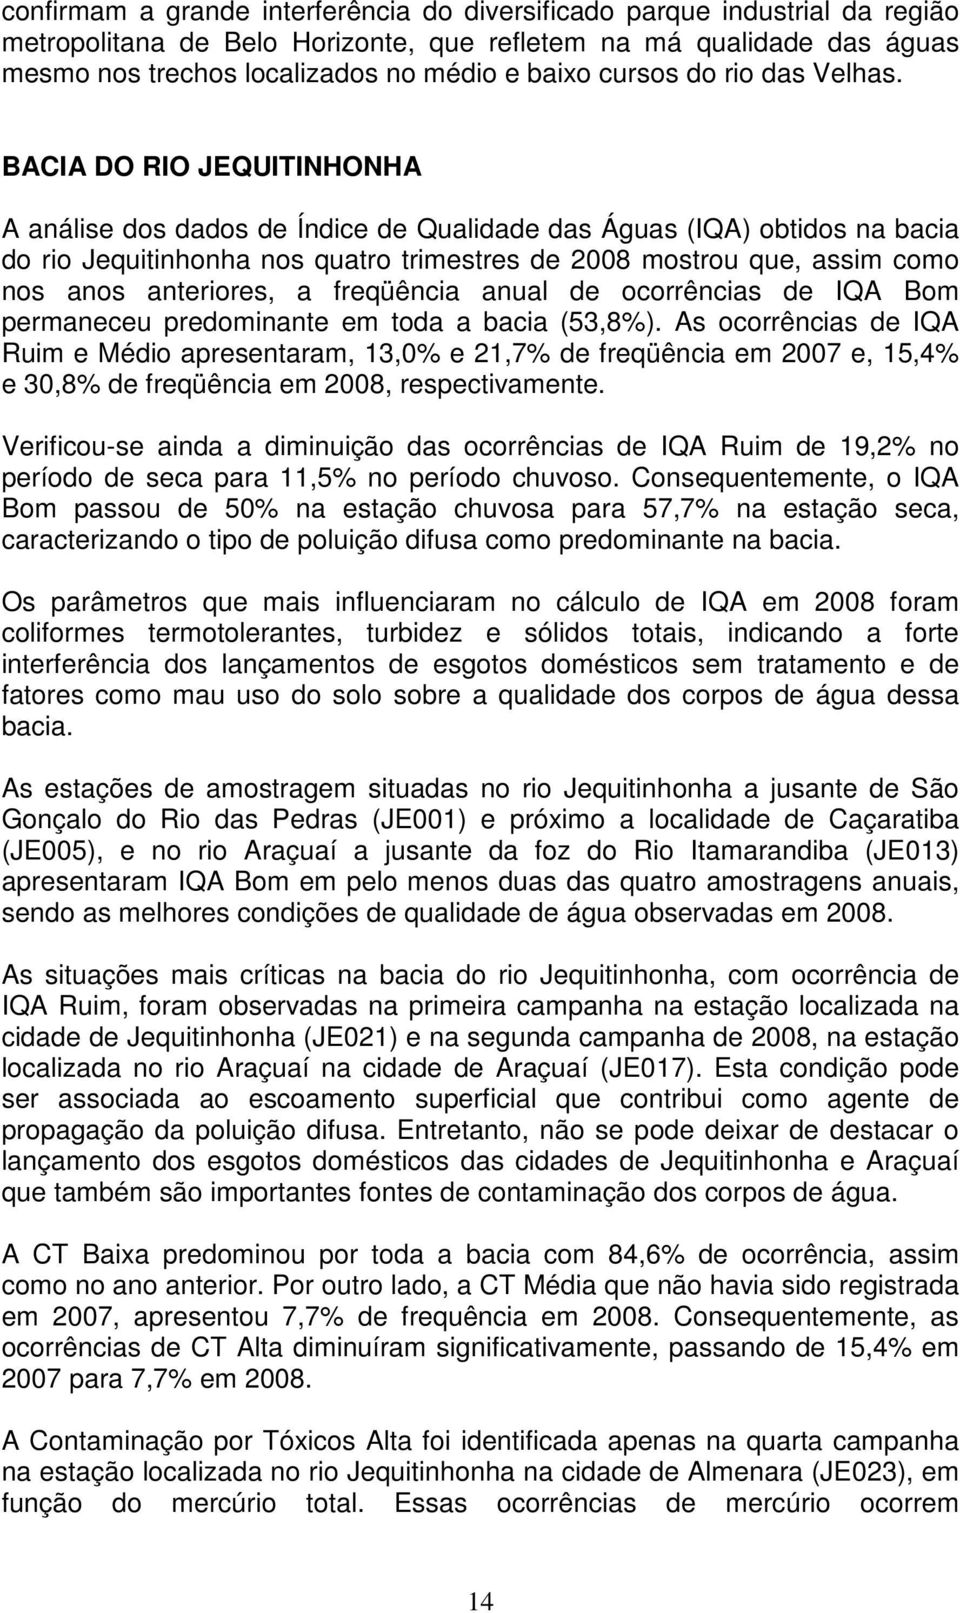 BACIA DO RIO JEQUITINHONHA A análise dos dados de Índice de Qualidade das Águas (IQA) obtidos na bacia do rio Jequitinhonha nos quatro trimestres de 2008 mostrou que, assim como nos anos anteriores,